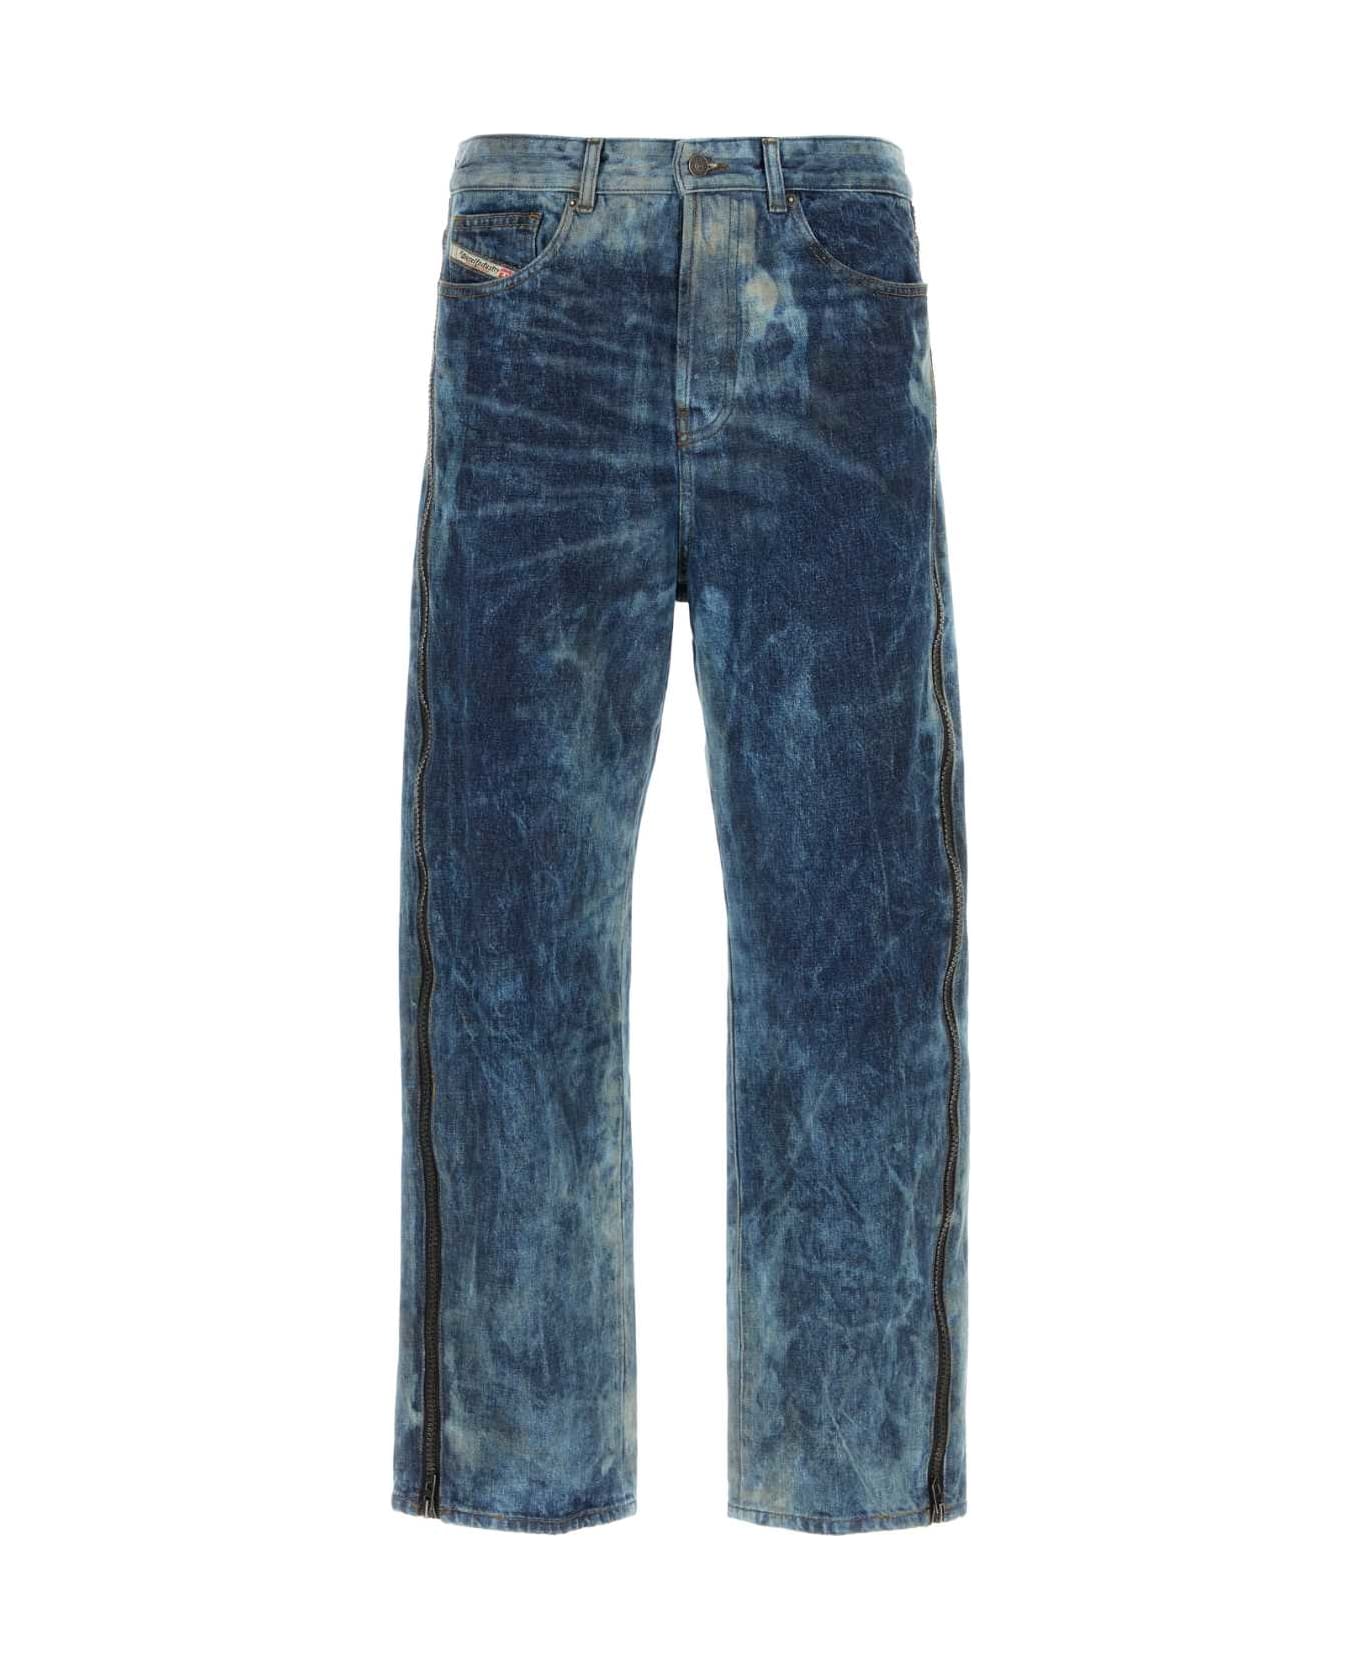 Diesel Denim D-rise 0pgax Jeans - 01